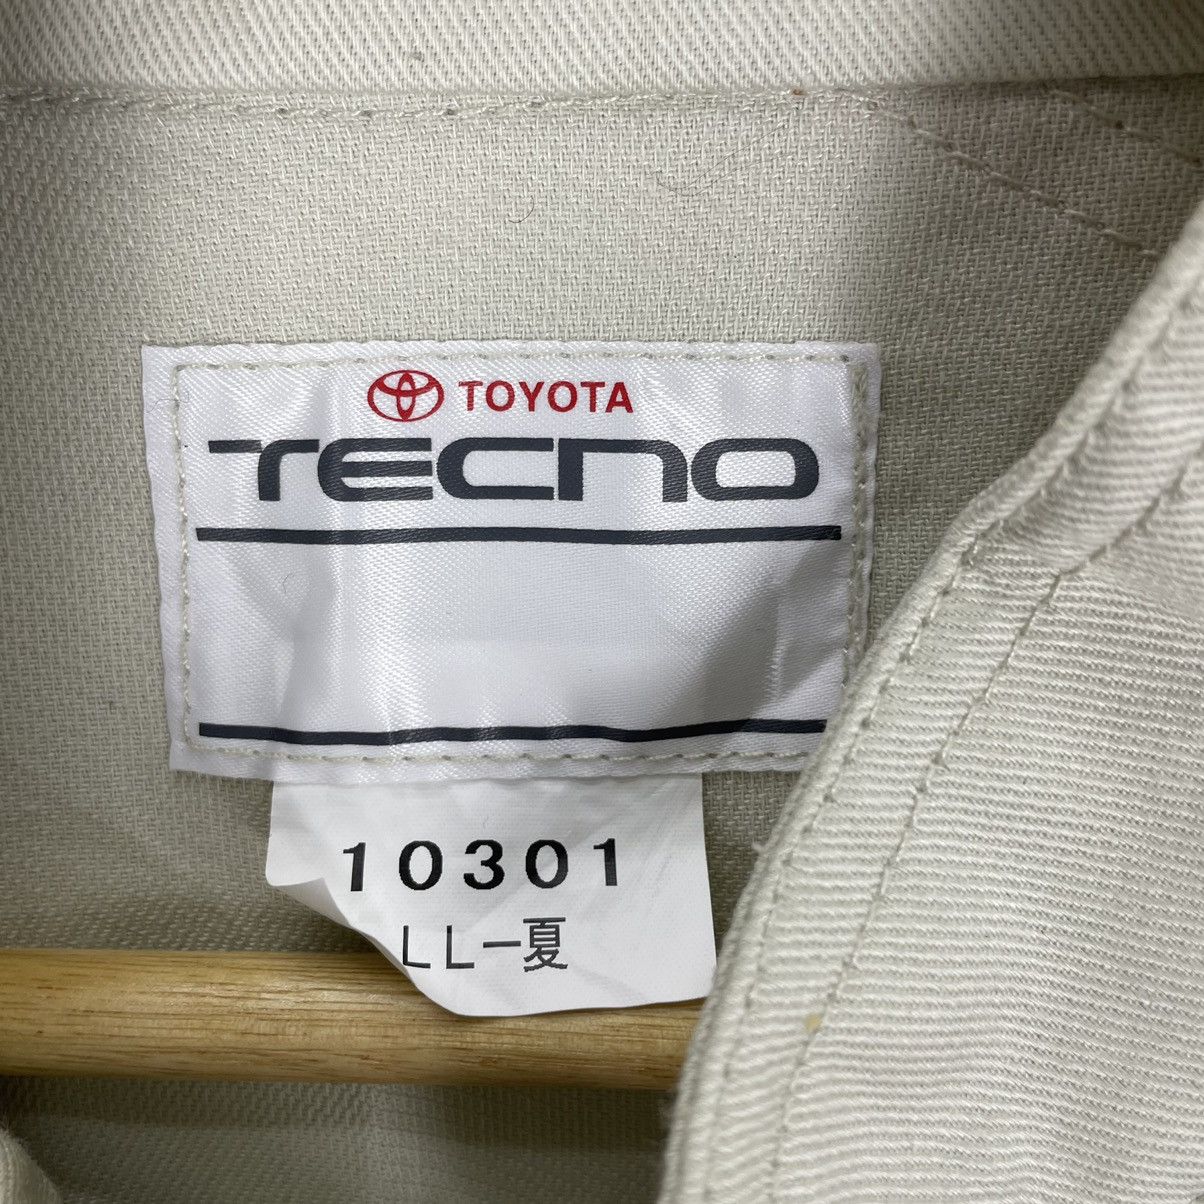 Vintage - ☀️90s TOYOTA Corolla Tecno Overalls Racing Trd - 10